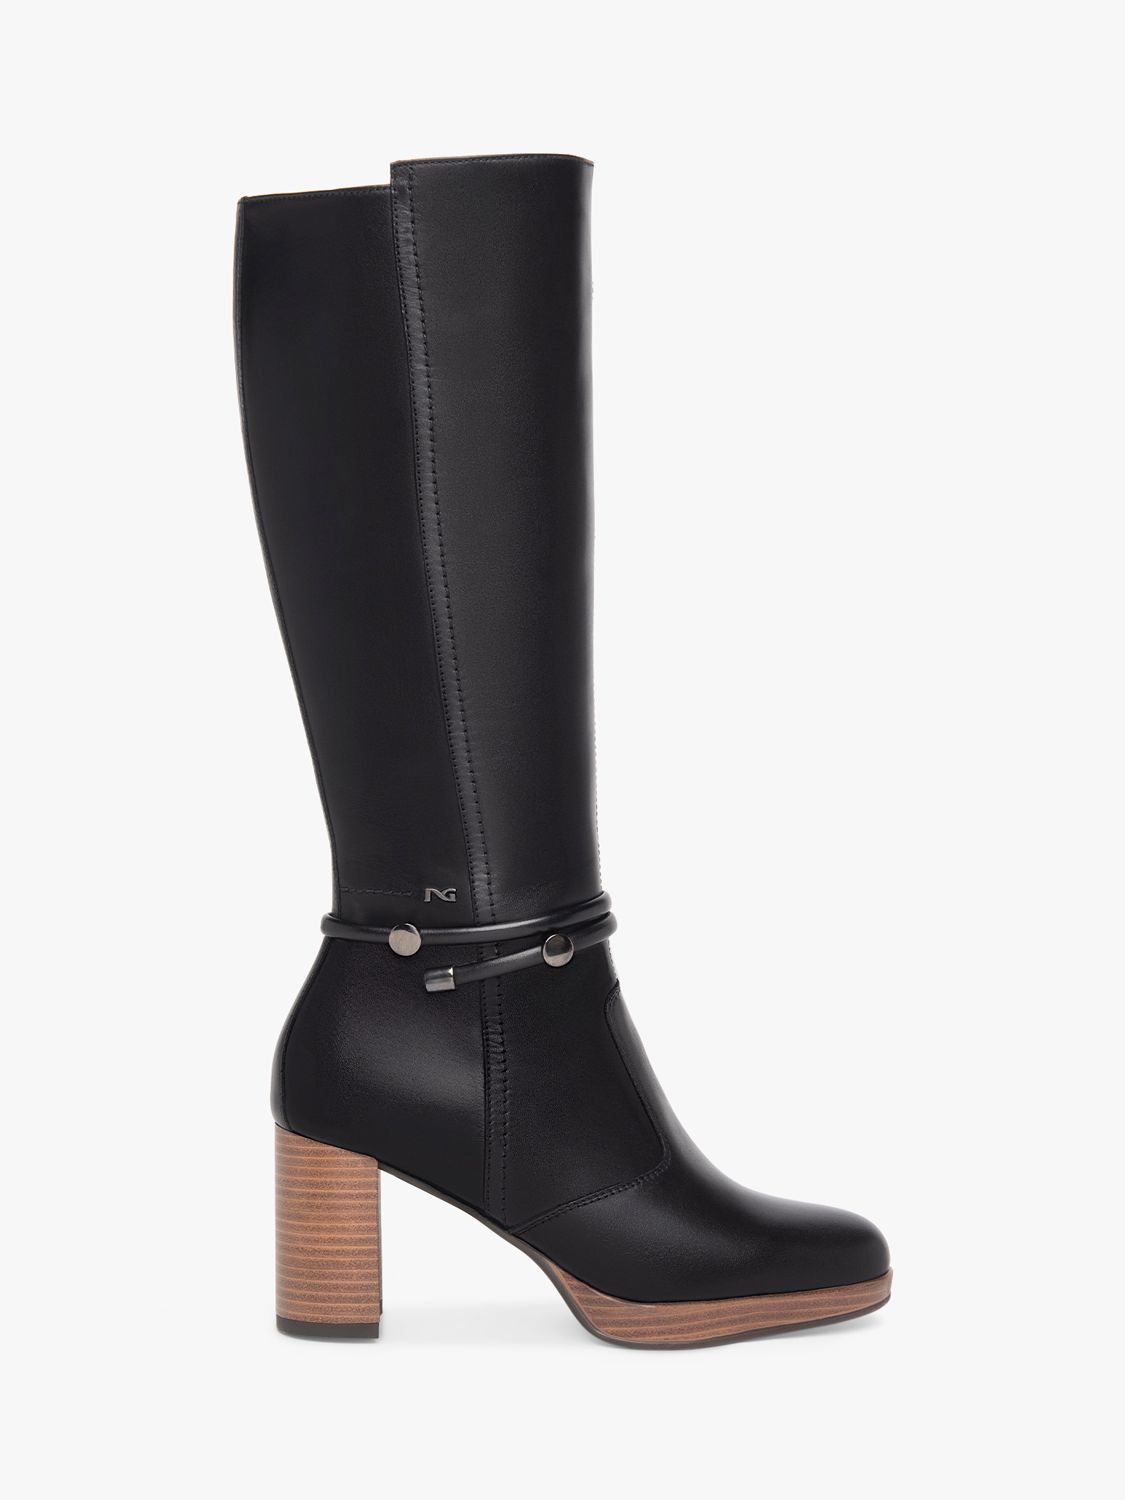 NeroGiardini Platform Block Heel Knee High Leather Boots, Black